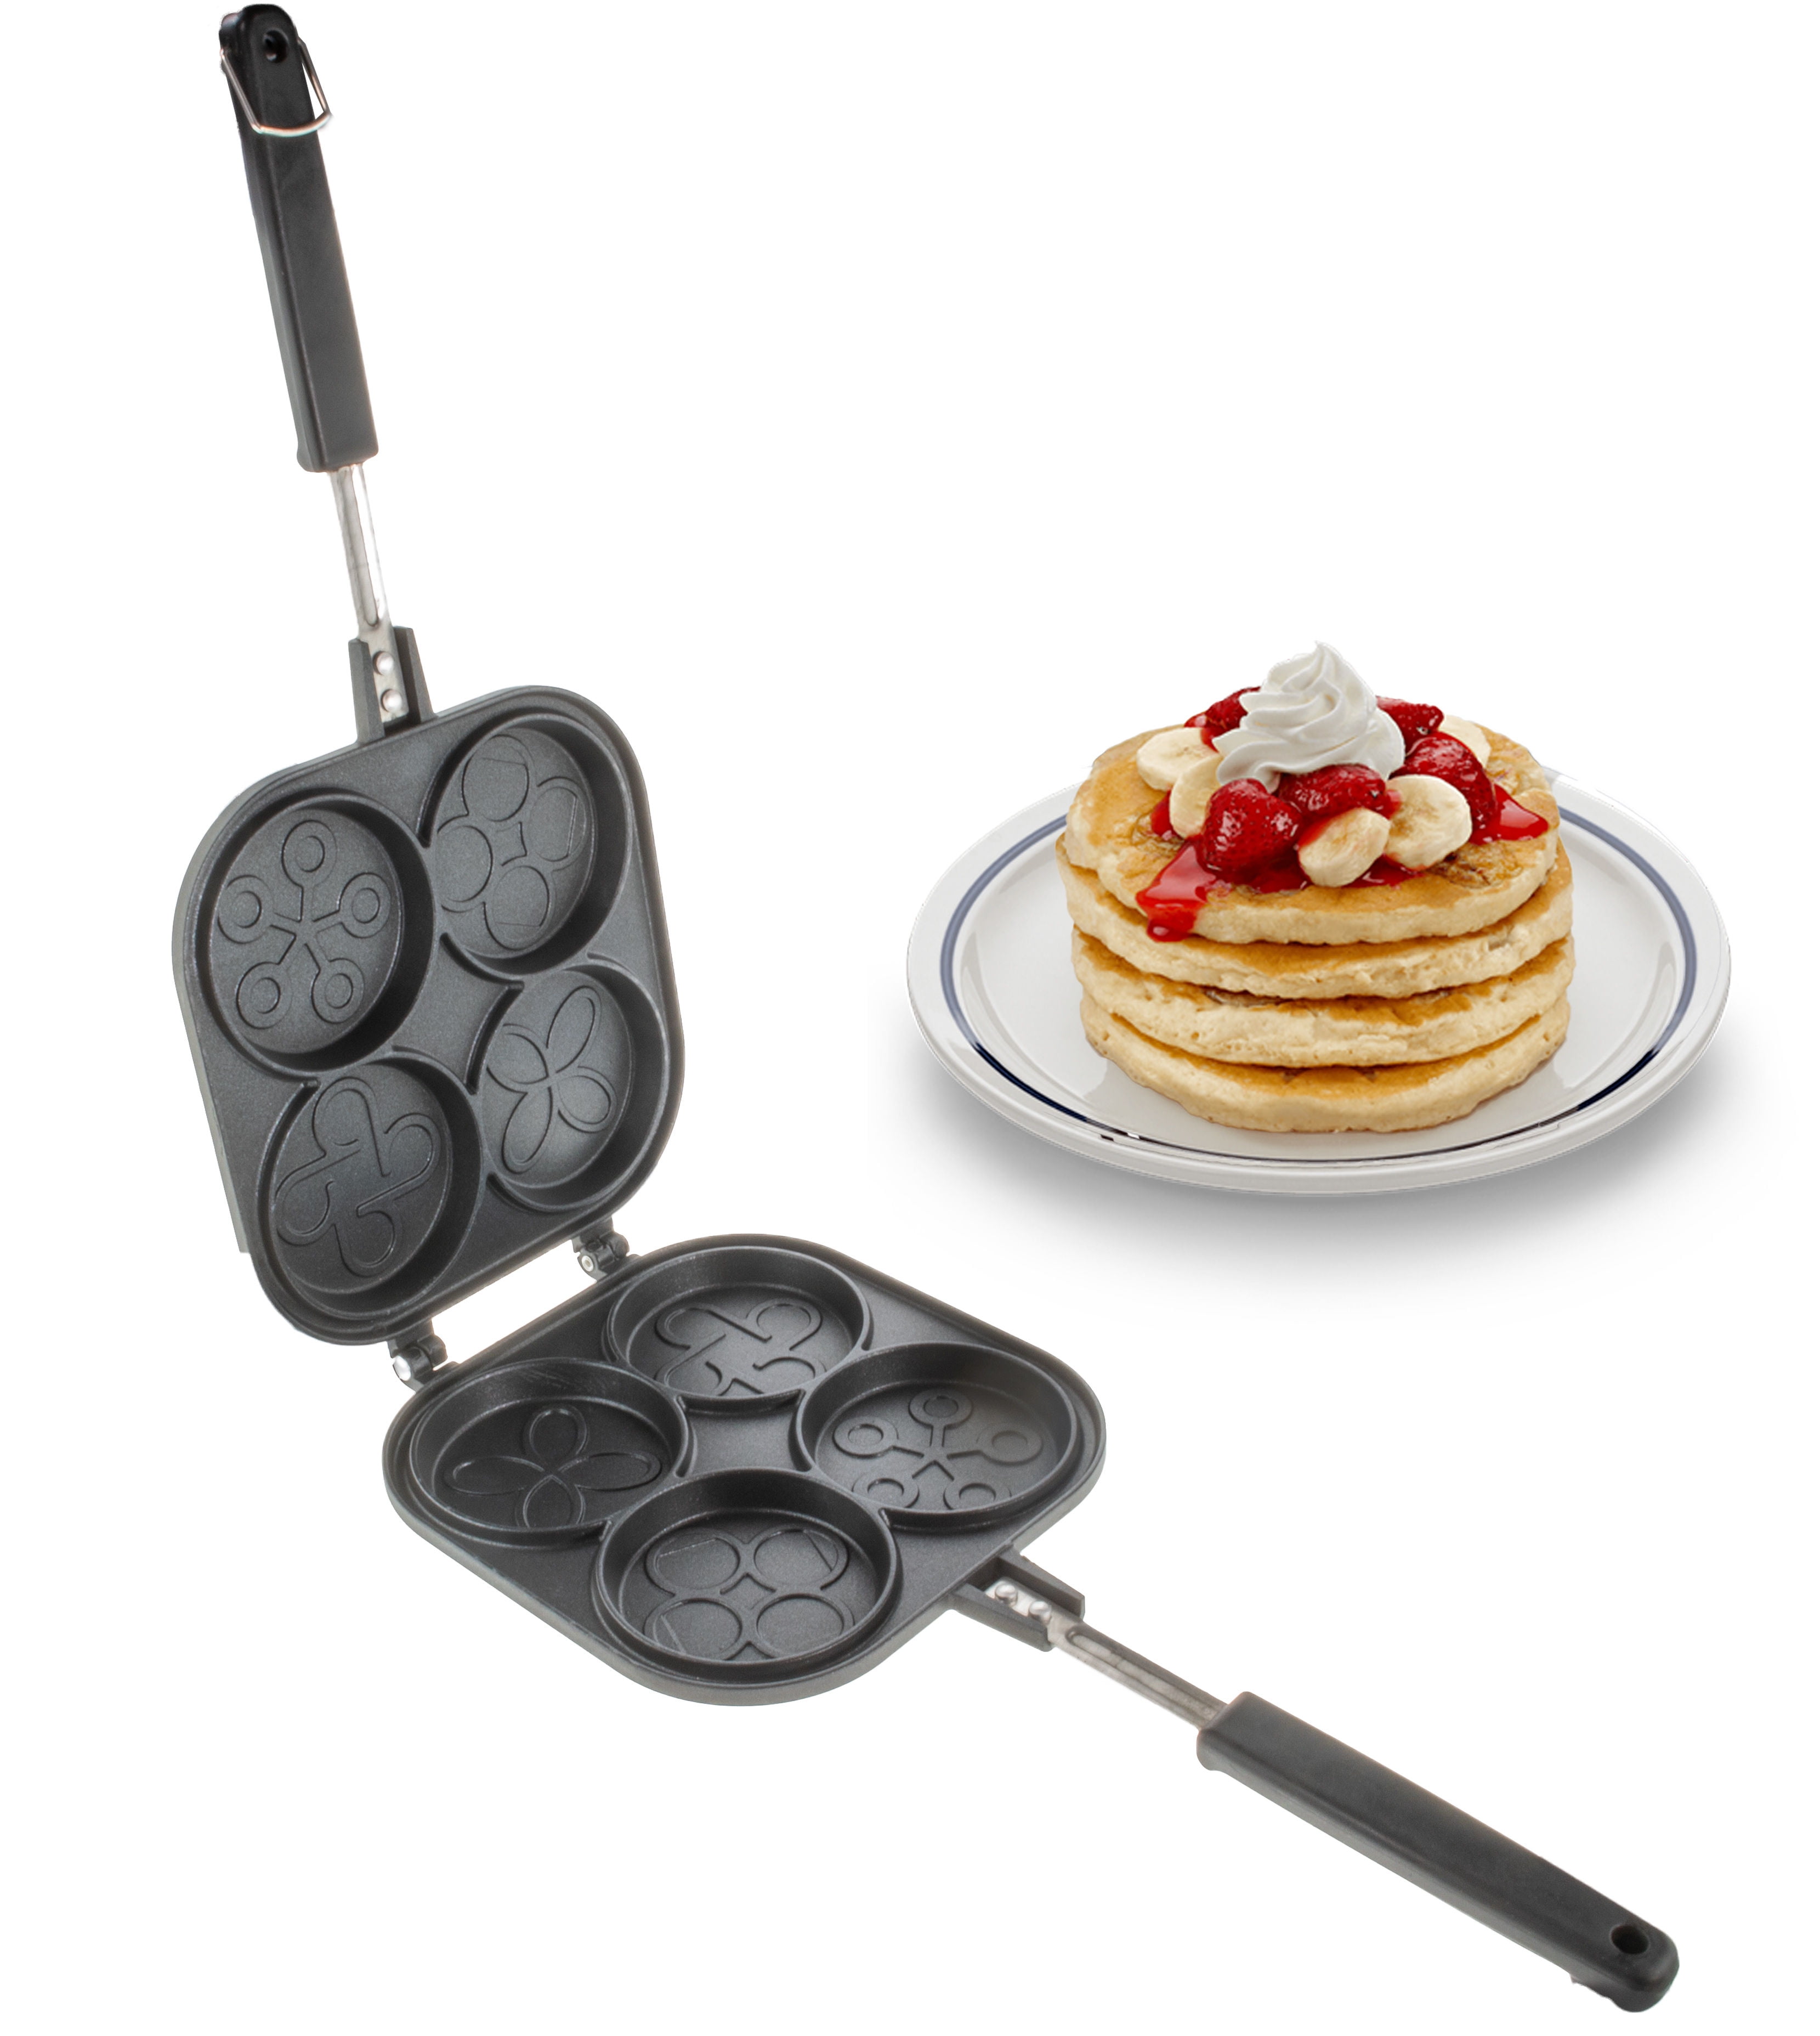 Pancake Pan Nonstick - 10 Inch Pancake Maker Pan With 7-Cup Waffle Mold  Blini Pan Silver Dollar Pancake Pan Breakfast Griddle,100% PFOA Free  Non-stick